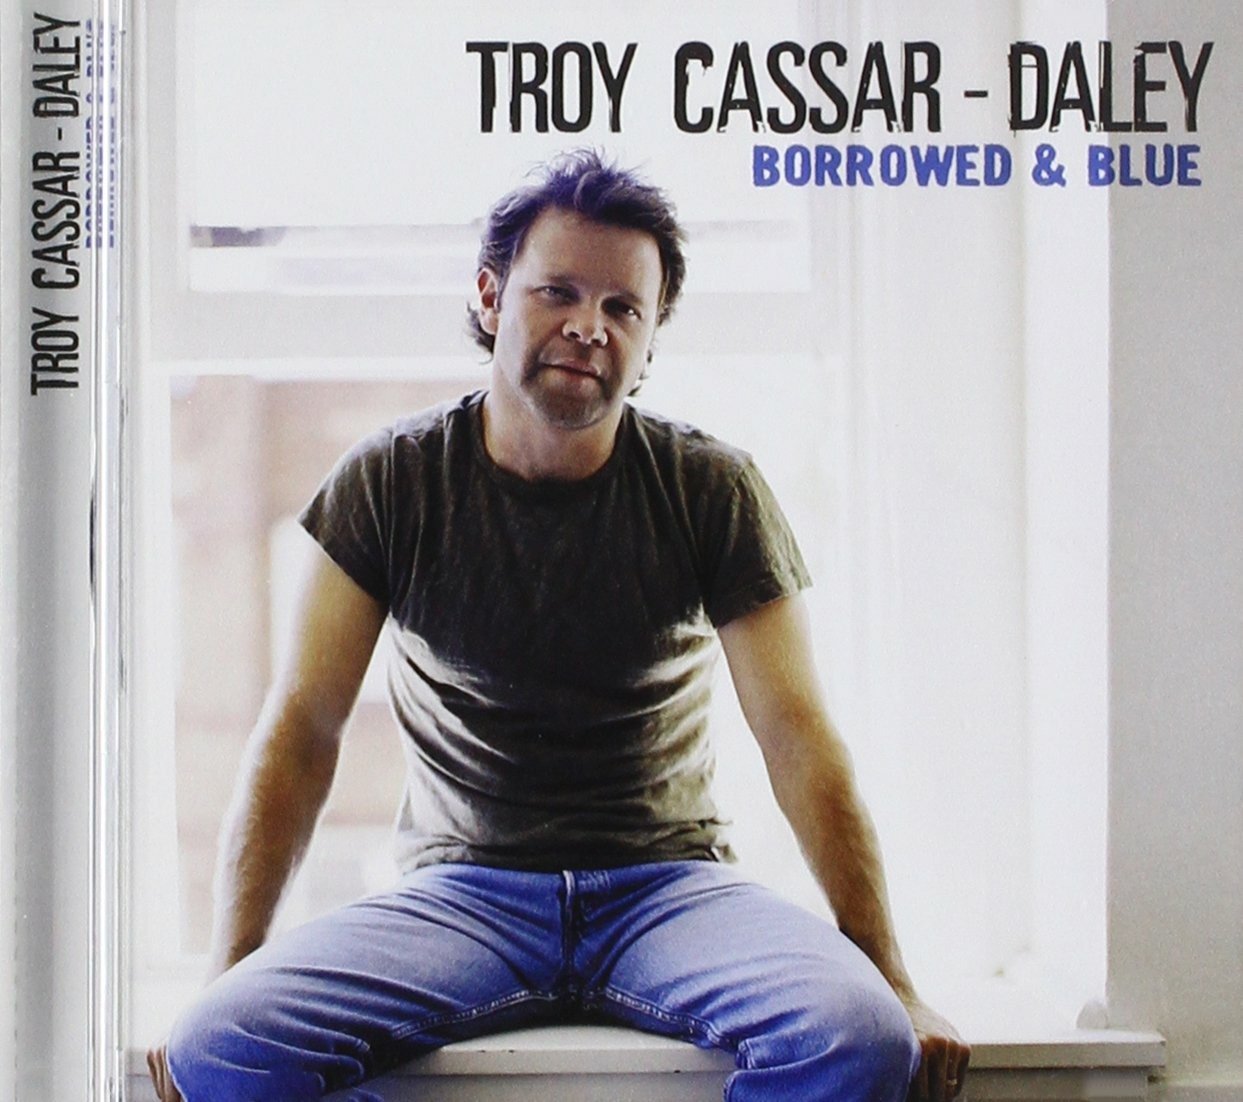 CD Shop - CASSAR-DALEY, TROY BORROWED & BLUE